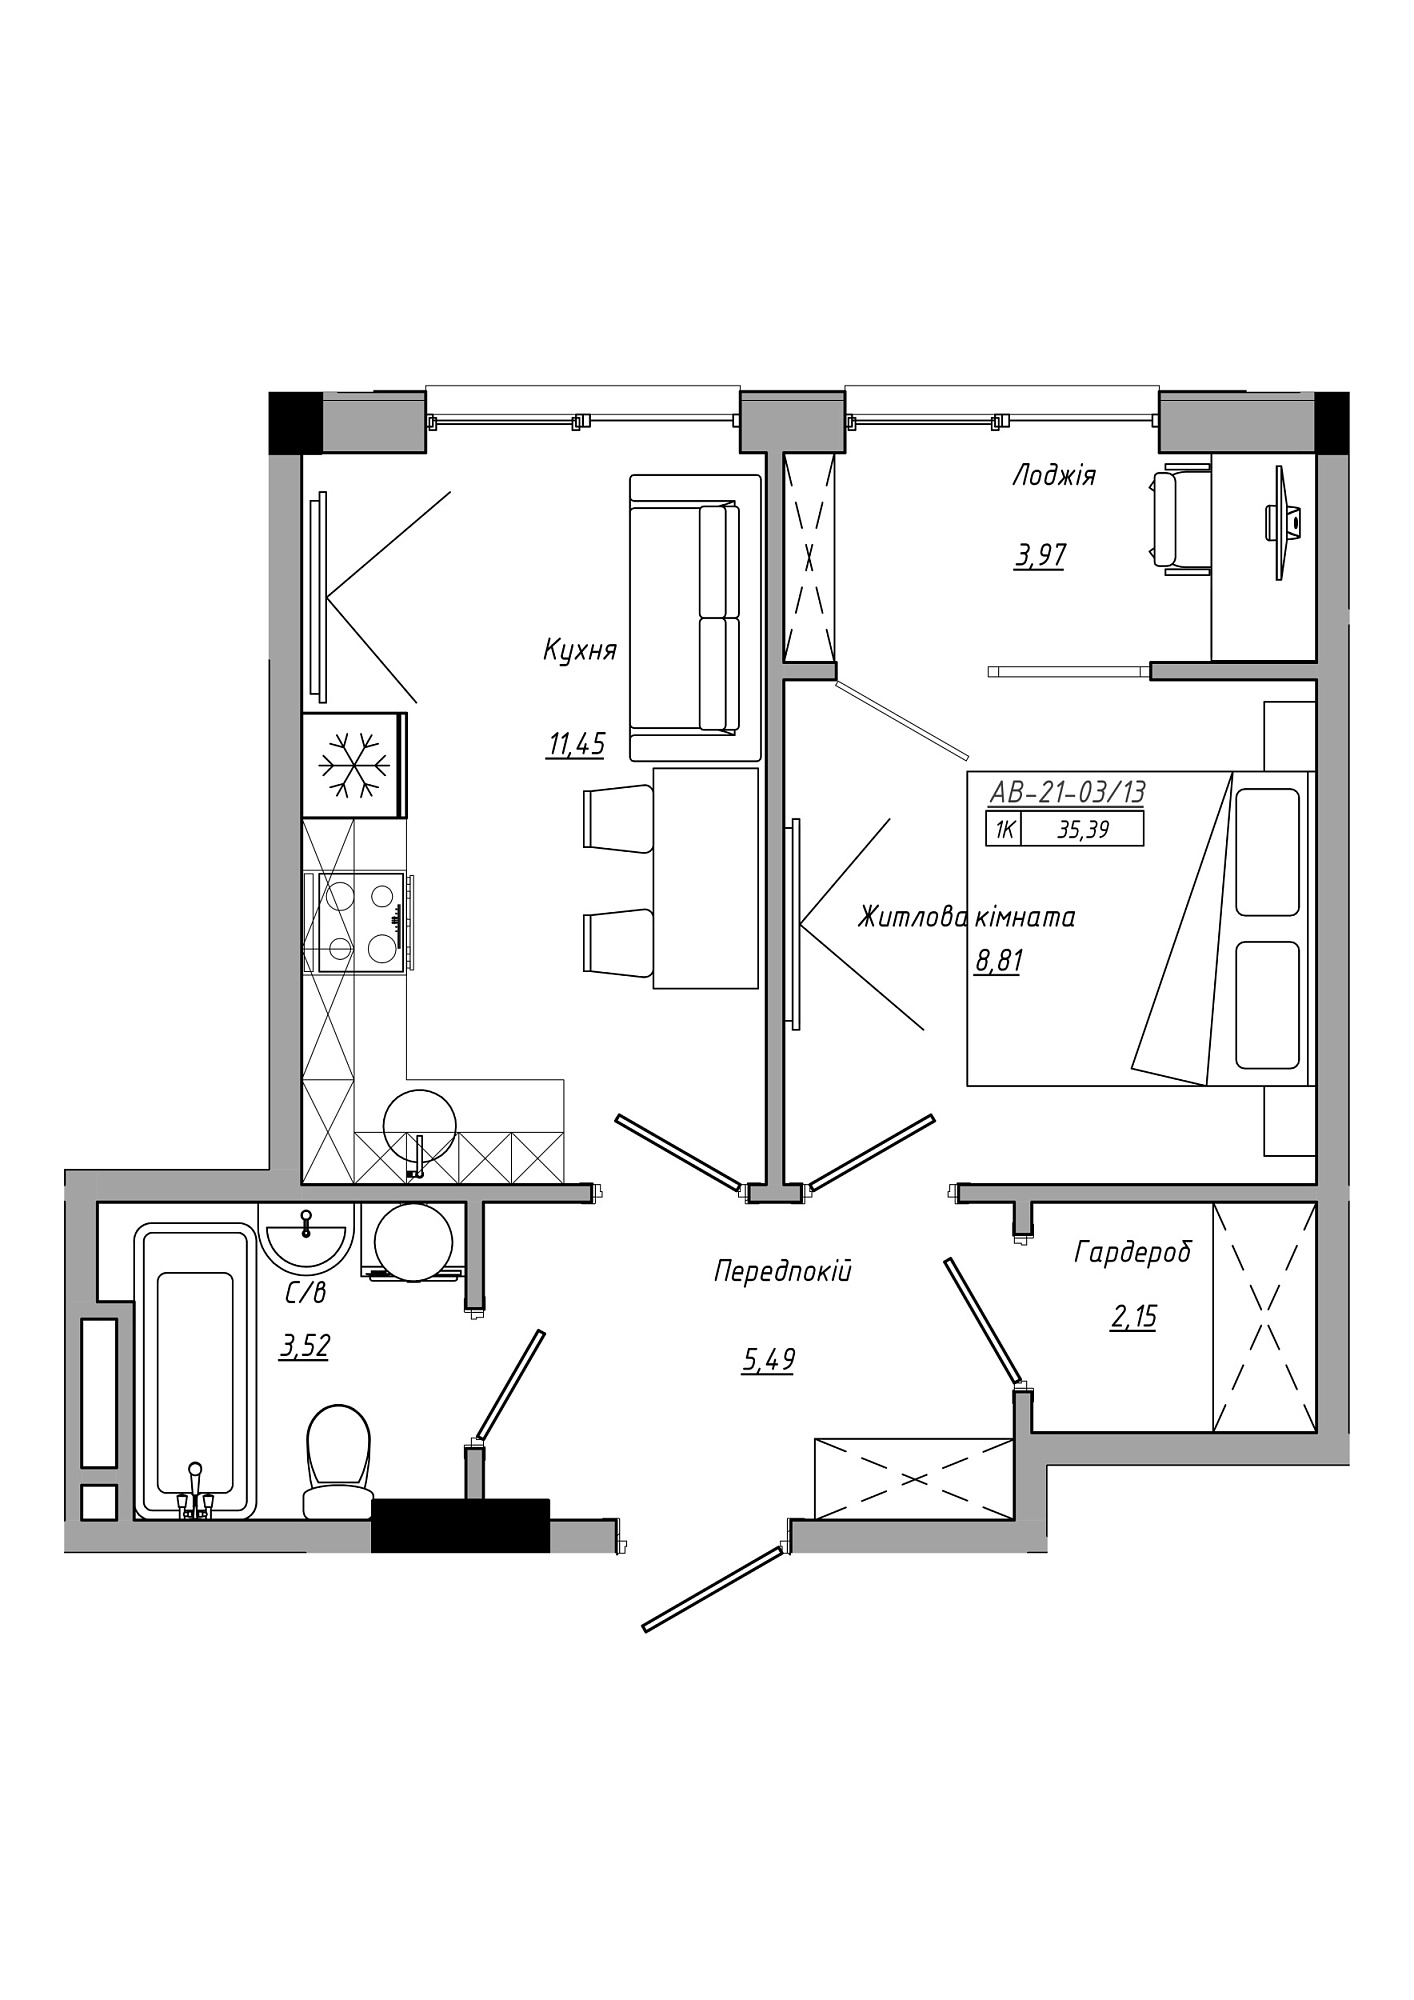 Планировка 1-к квартира площей 35.39м2, AB-21-03/00013.